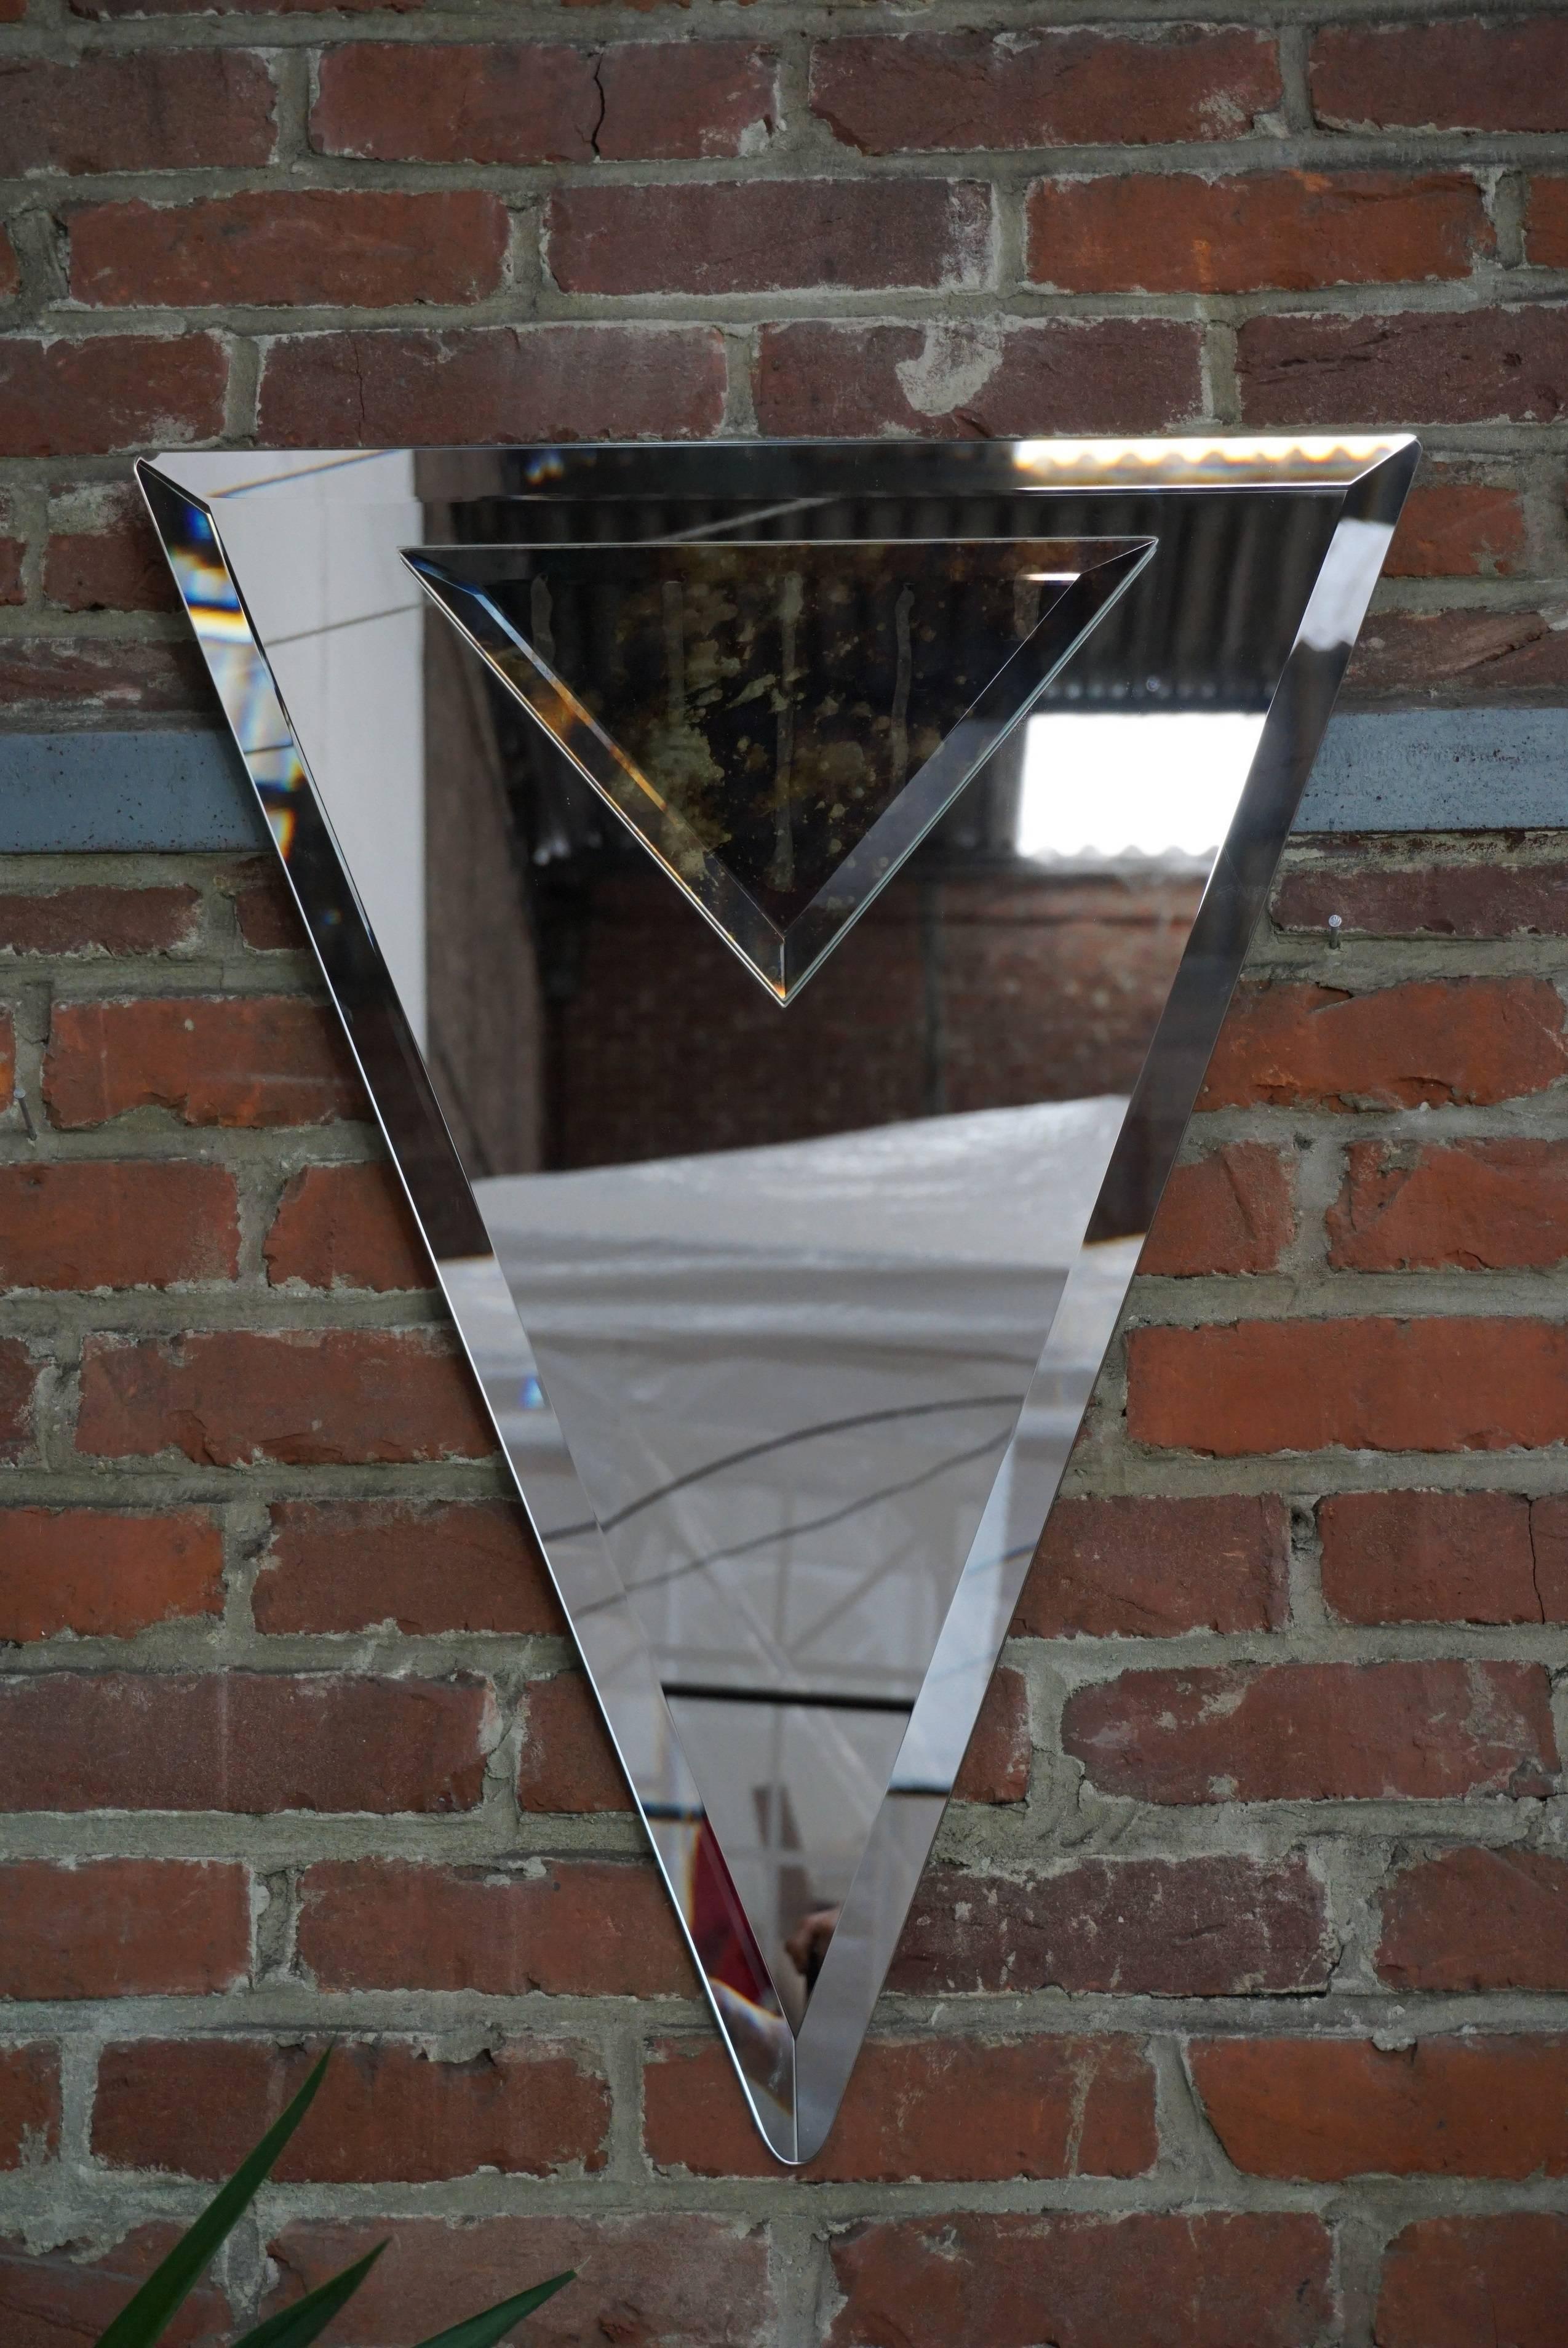 Prächtiger alter Spiegel, abgeschrägt, dreieckig in Form und Art Deco-Stil, präsentiert eine schöne Einstellung Abgrund mit seinem kleinen Dreieck Spiegel eingebettet in mercurised tan Bronze, die schönste Wirkung!